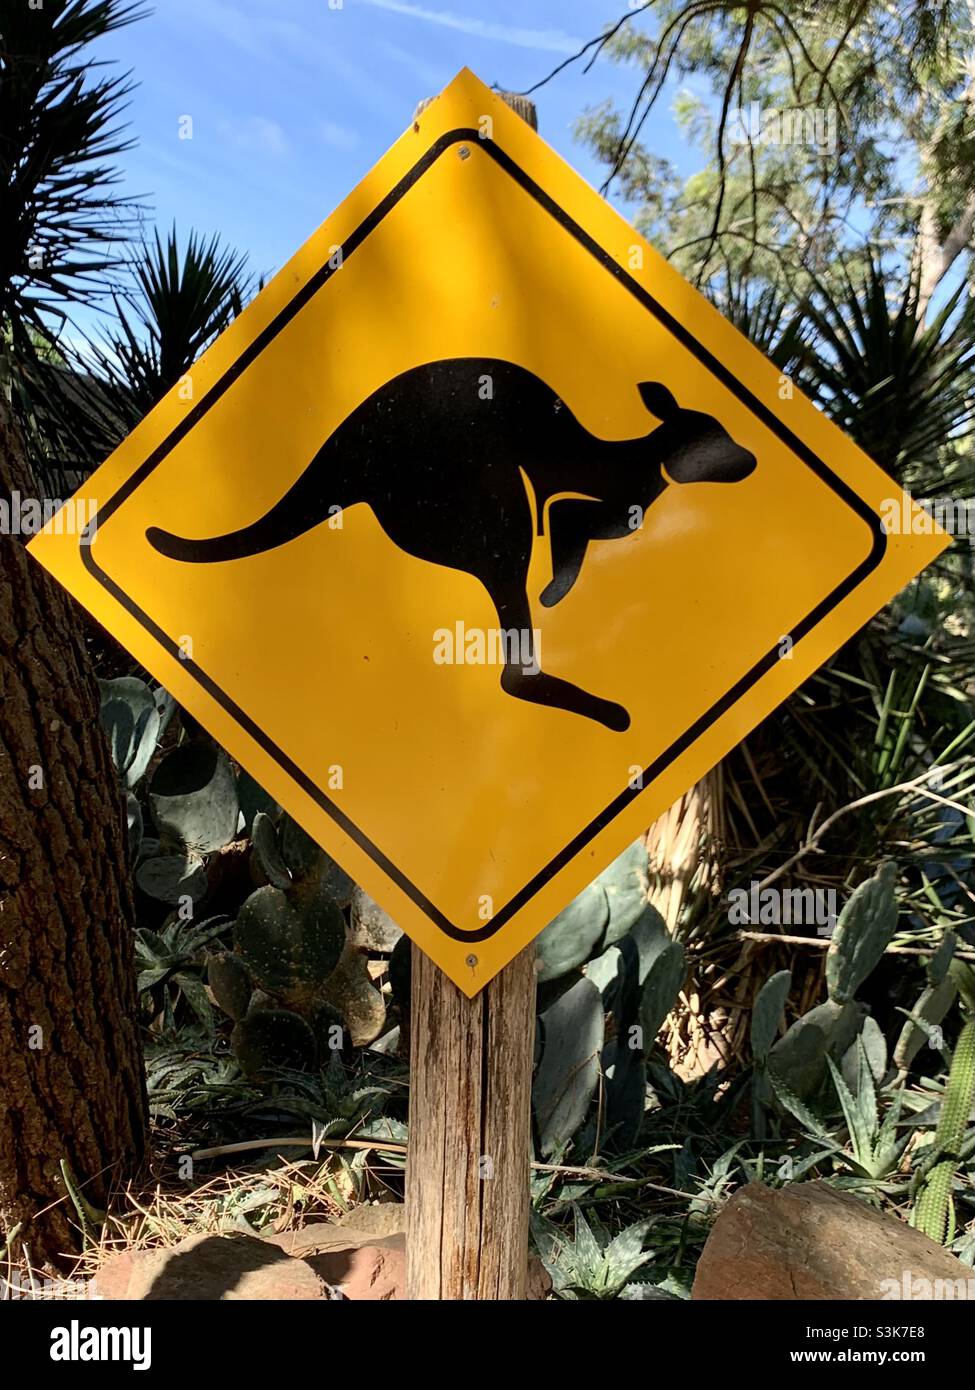 Känguru-Schild. Warnung Känguru in der Nähe oder beim Überqueren. Australische Tierwelt. Wilde Tiere. Draußen im Busch Stockfoto